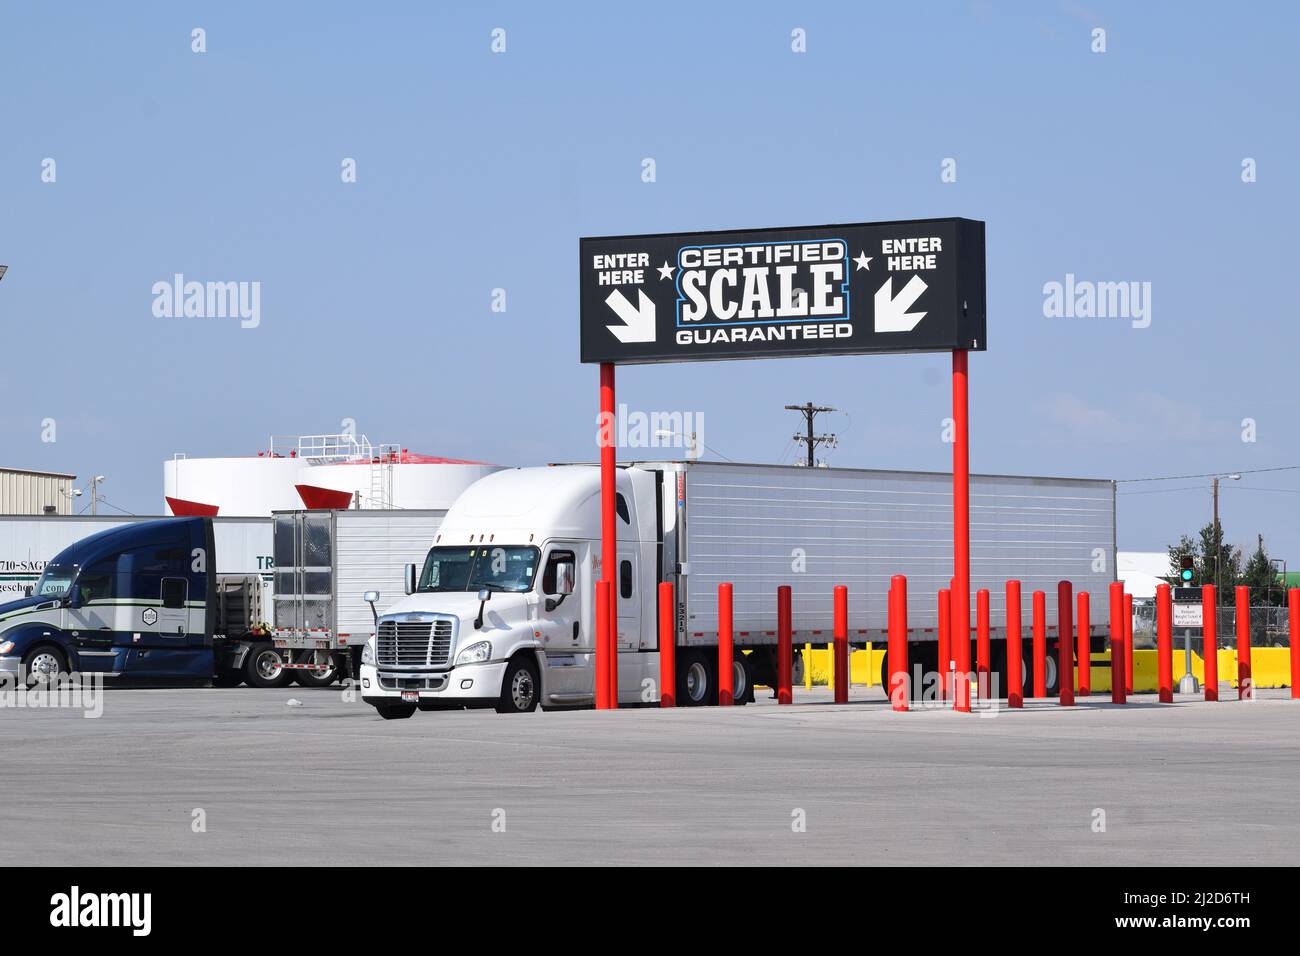 Bilancia per camion certificata alla fermata Sapp Bros Truck Stop sul lato est di Cheyenne Wyoming; agosto 2021 Foto Stock